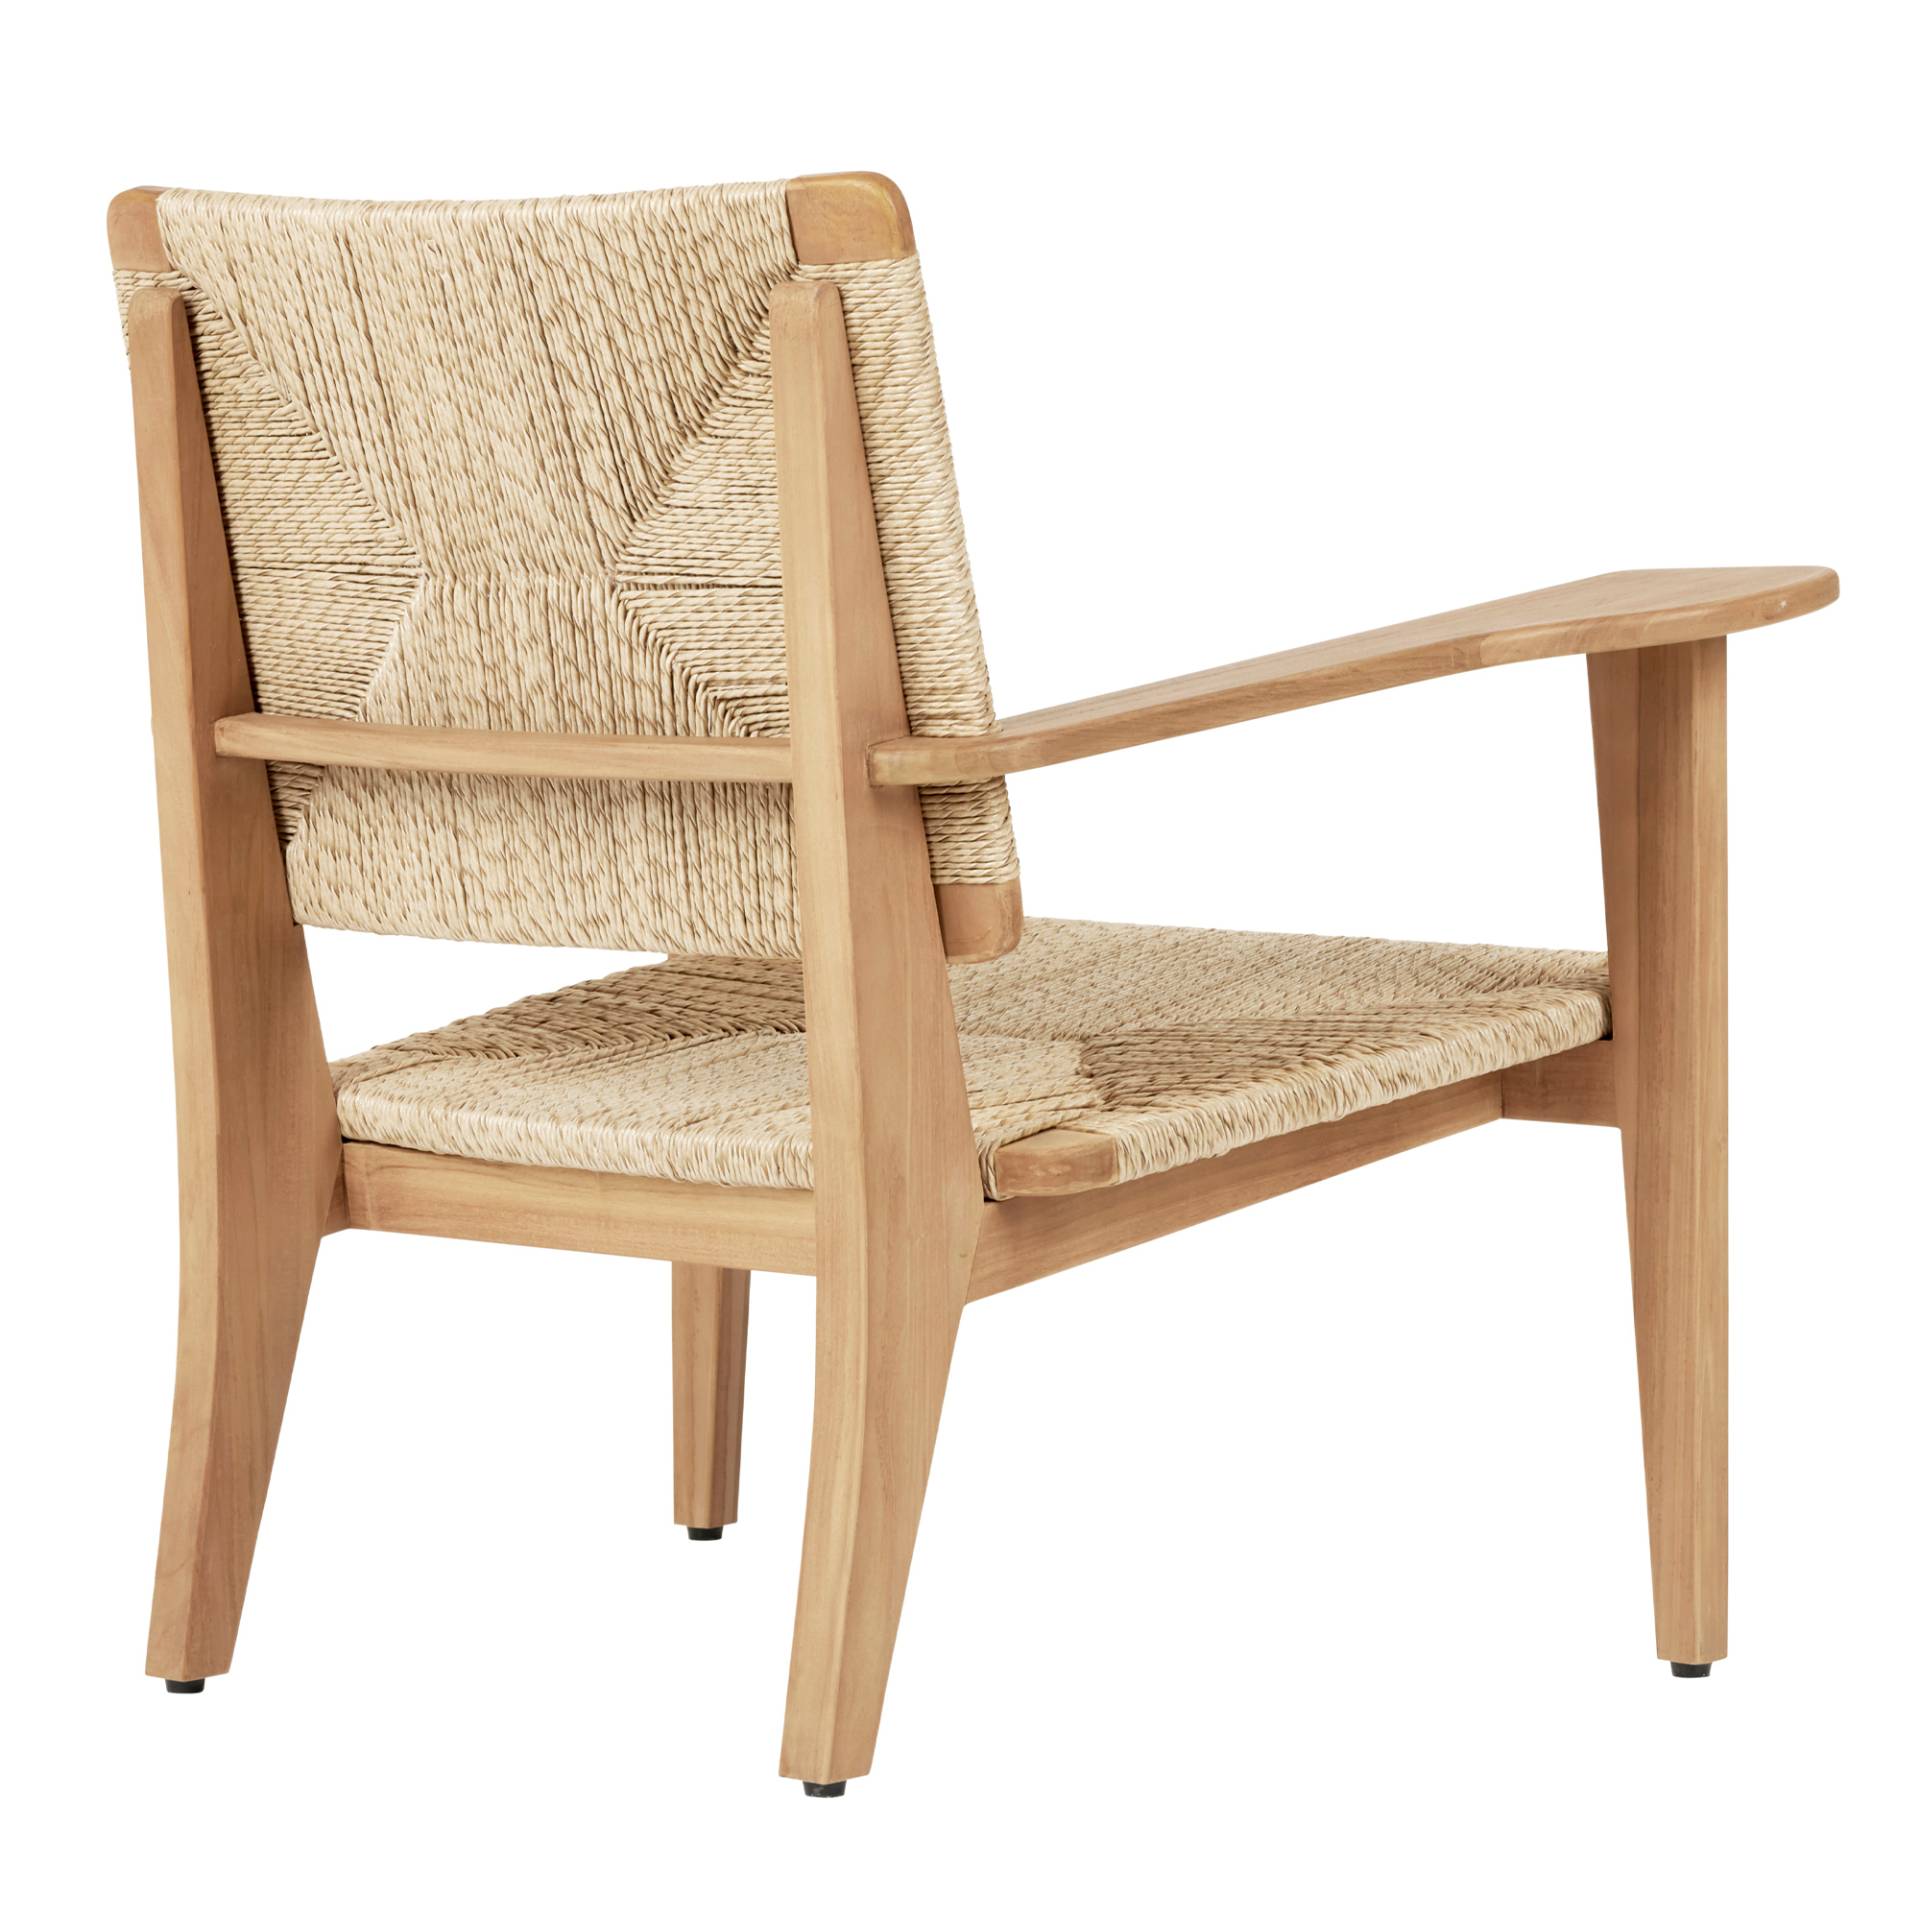 Gubi - F-Chair Outdoor Lounge Chair - Teak natur/beige/HDPE-Geflecht/BxHxT 41x81x53cm/Beschläge Edelstahl/Kunststoffgleiter von Gubi